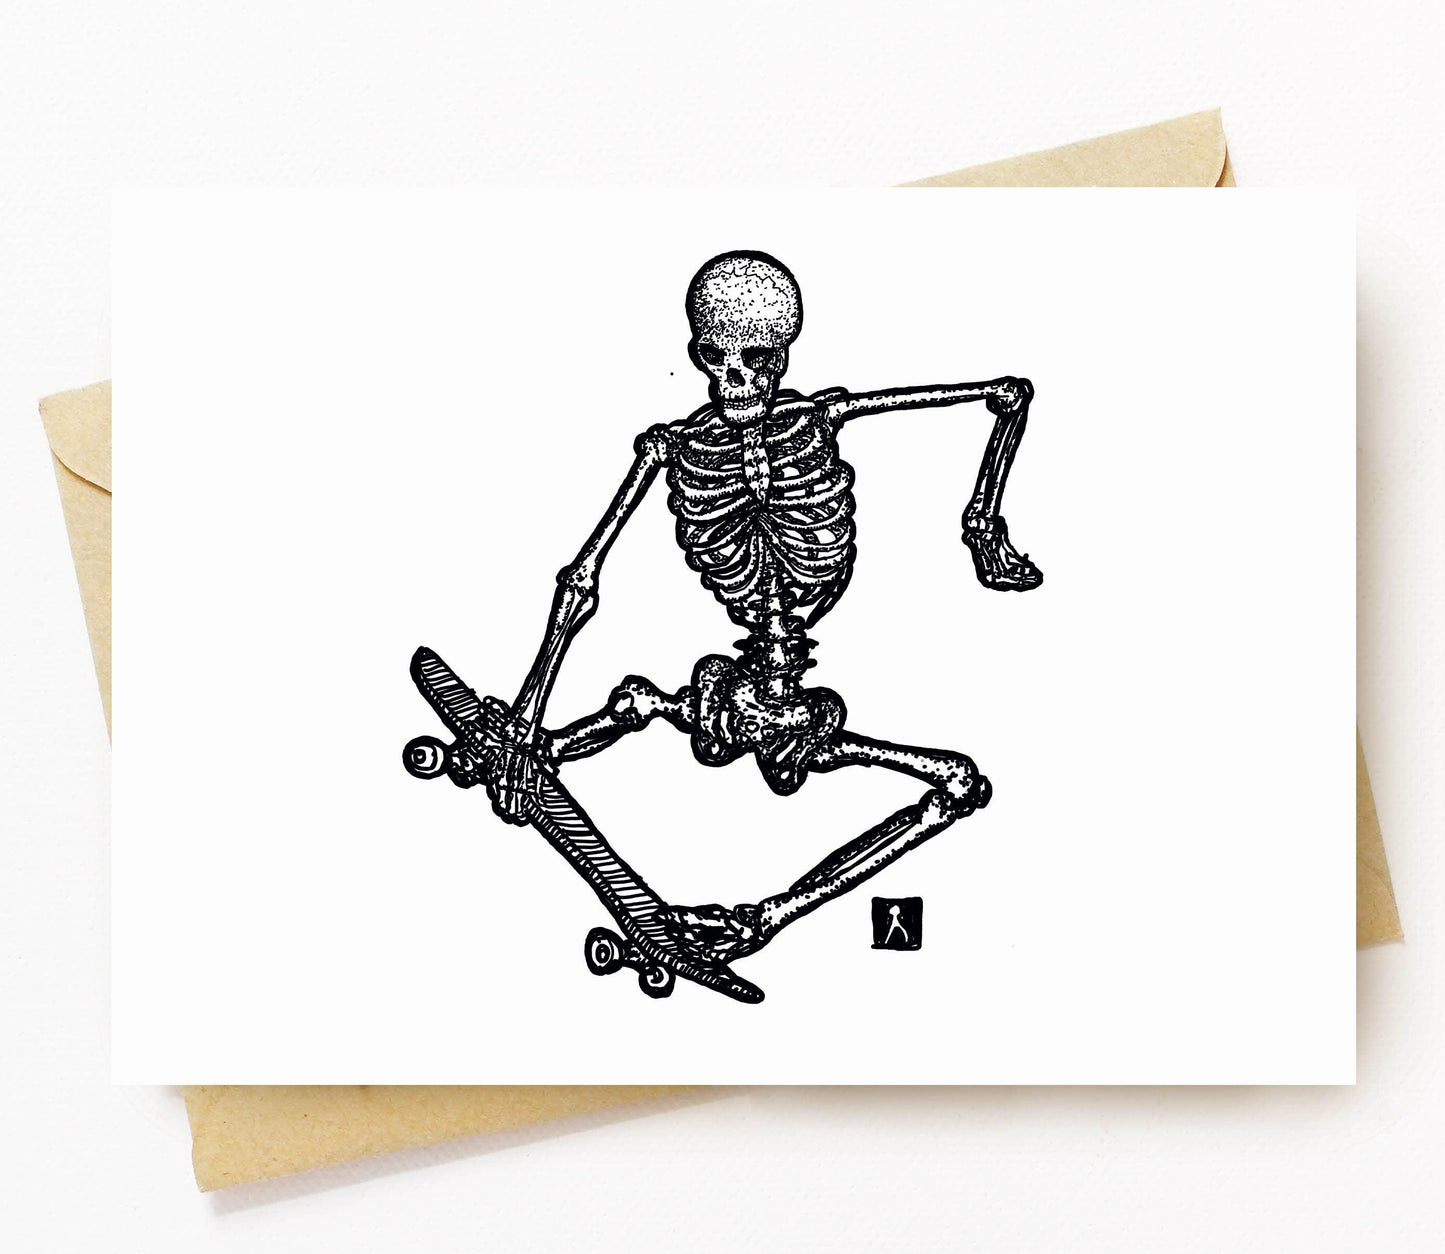 BellavanceInk: Greeting Card With Skeleton Skate Boarding 5 x 7 Inches - BellavanceInk